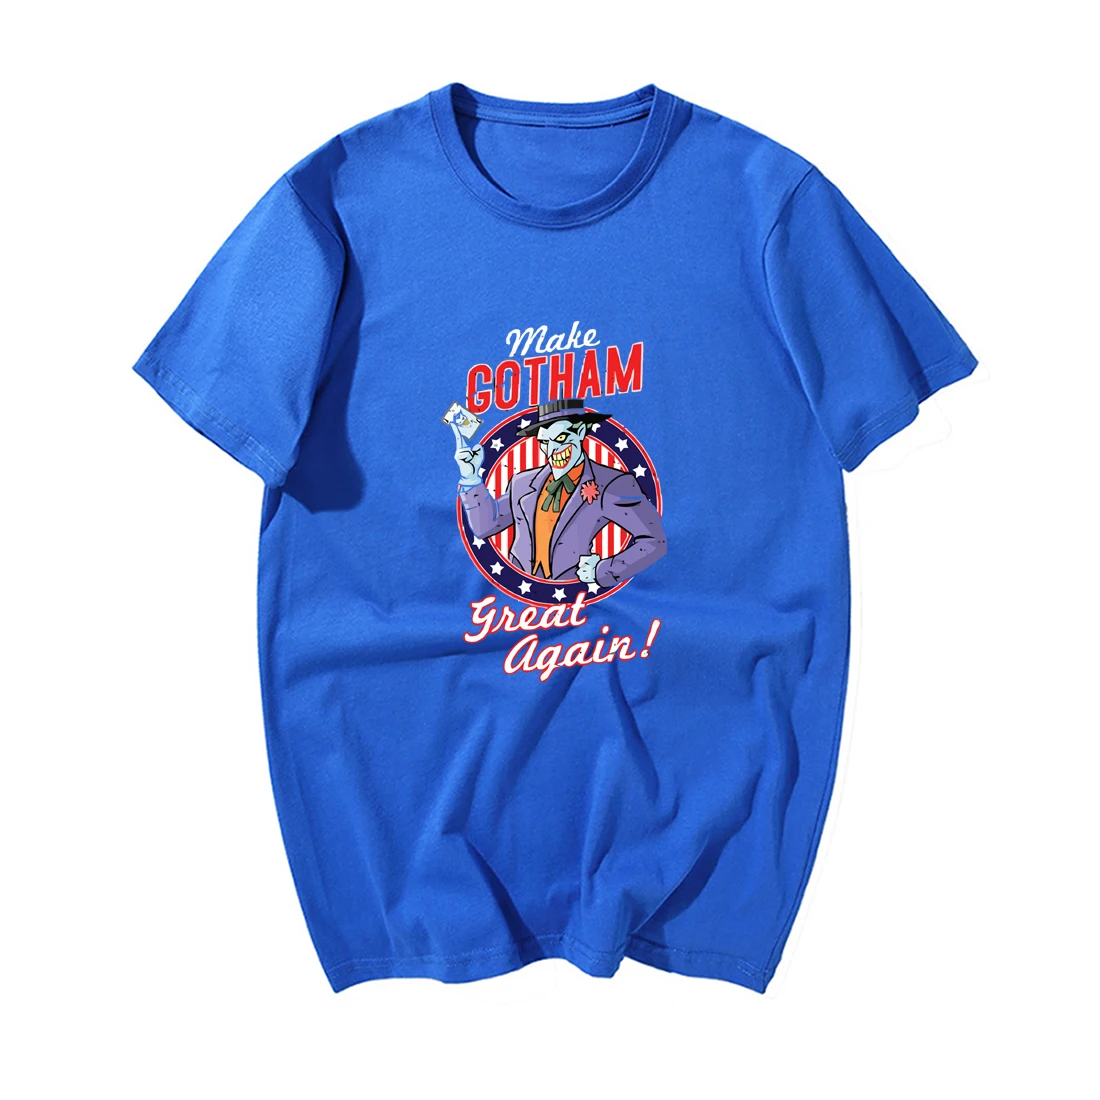 Забавная Футболка Джокер, Мужская футболка Make Gotham Great Again, модные летние повседневные топы, хлопковые футболки с коротким рукавом, топы